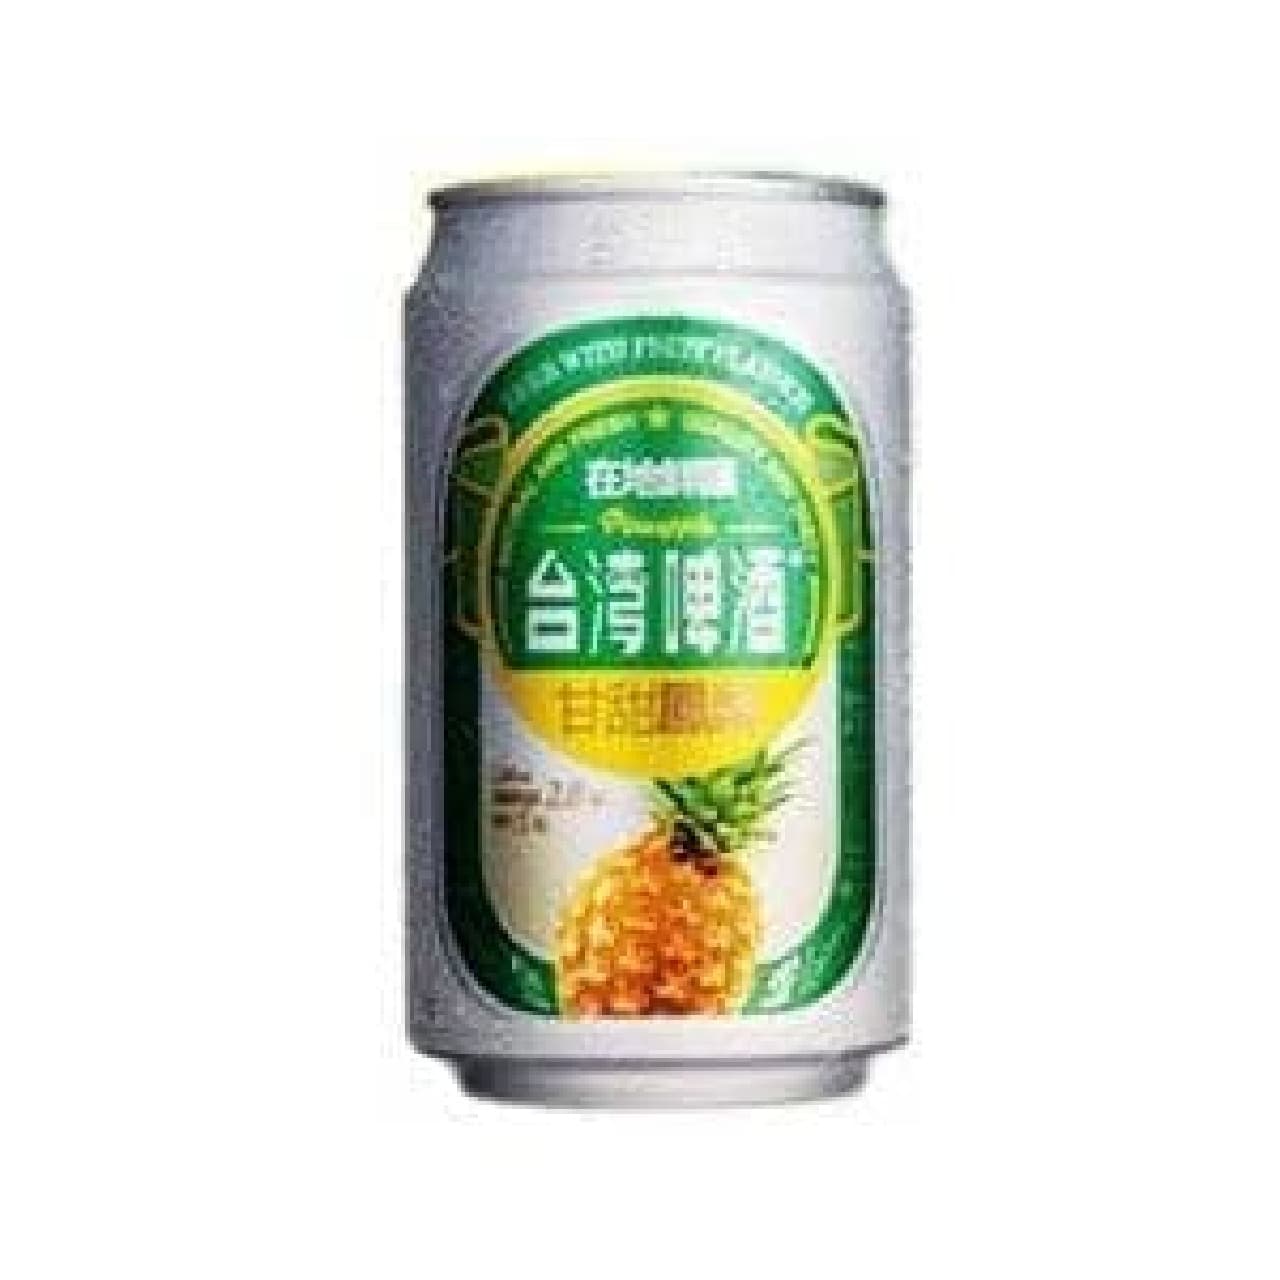 台湾で大ヒットの「パイナップルビール」がついに日本上陸！